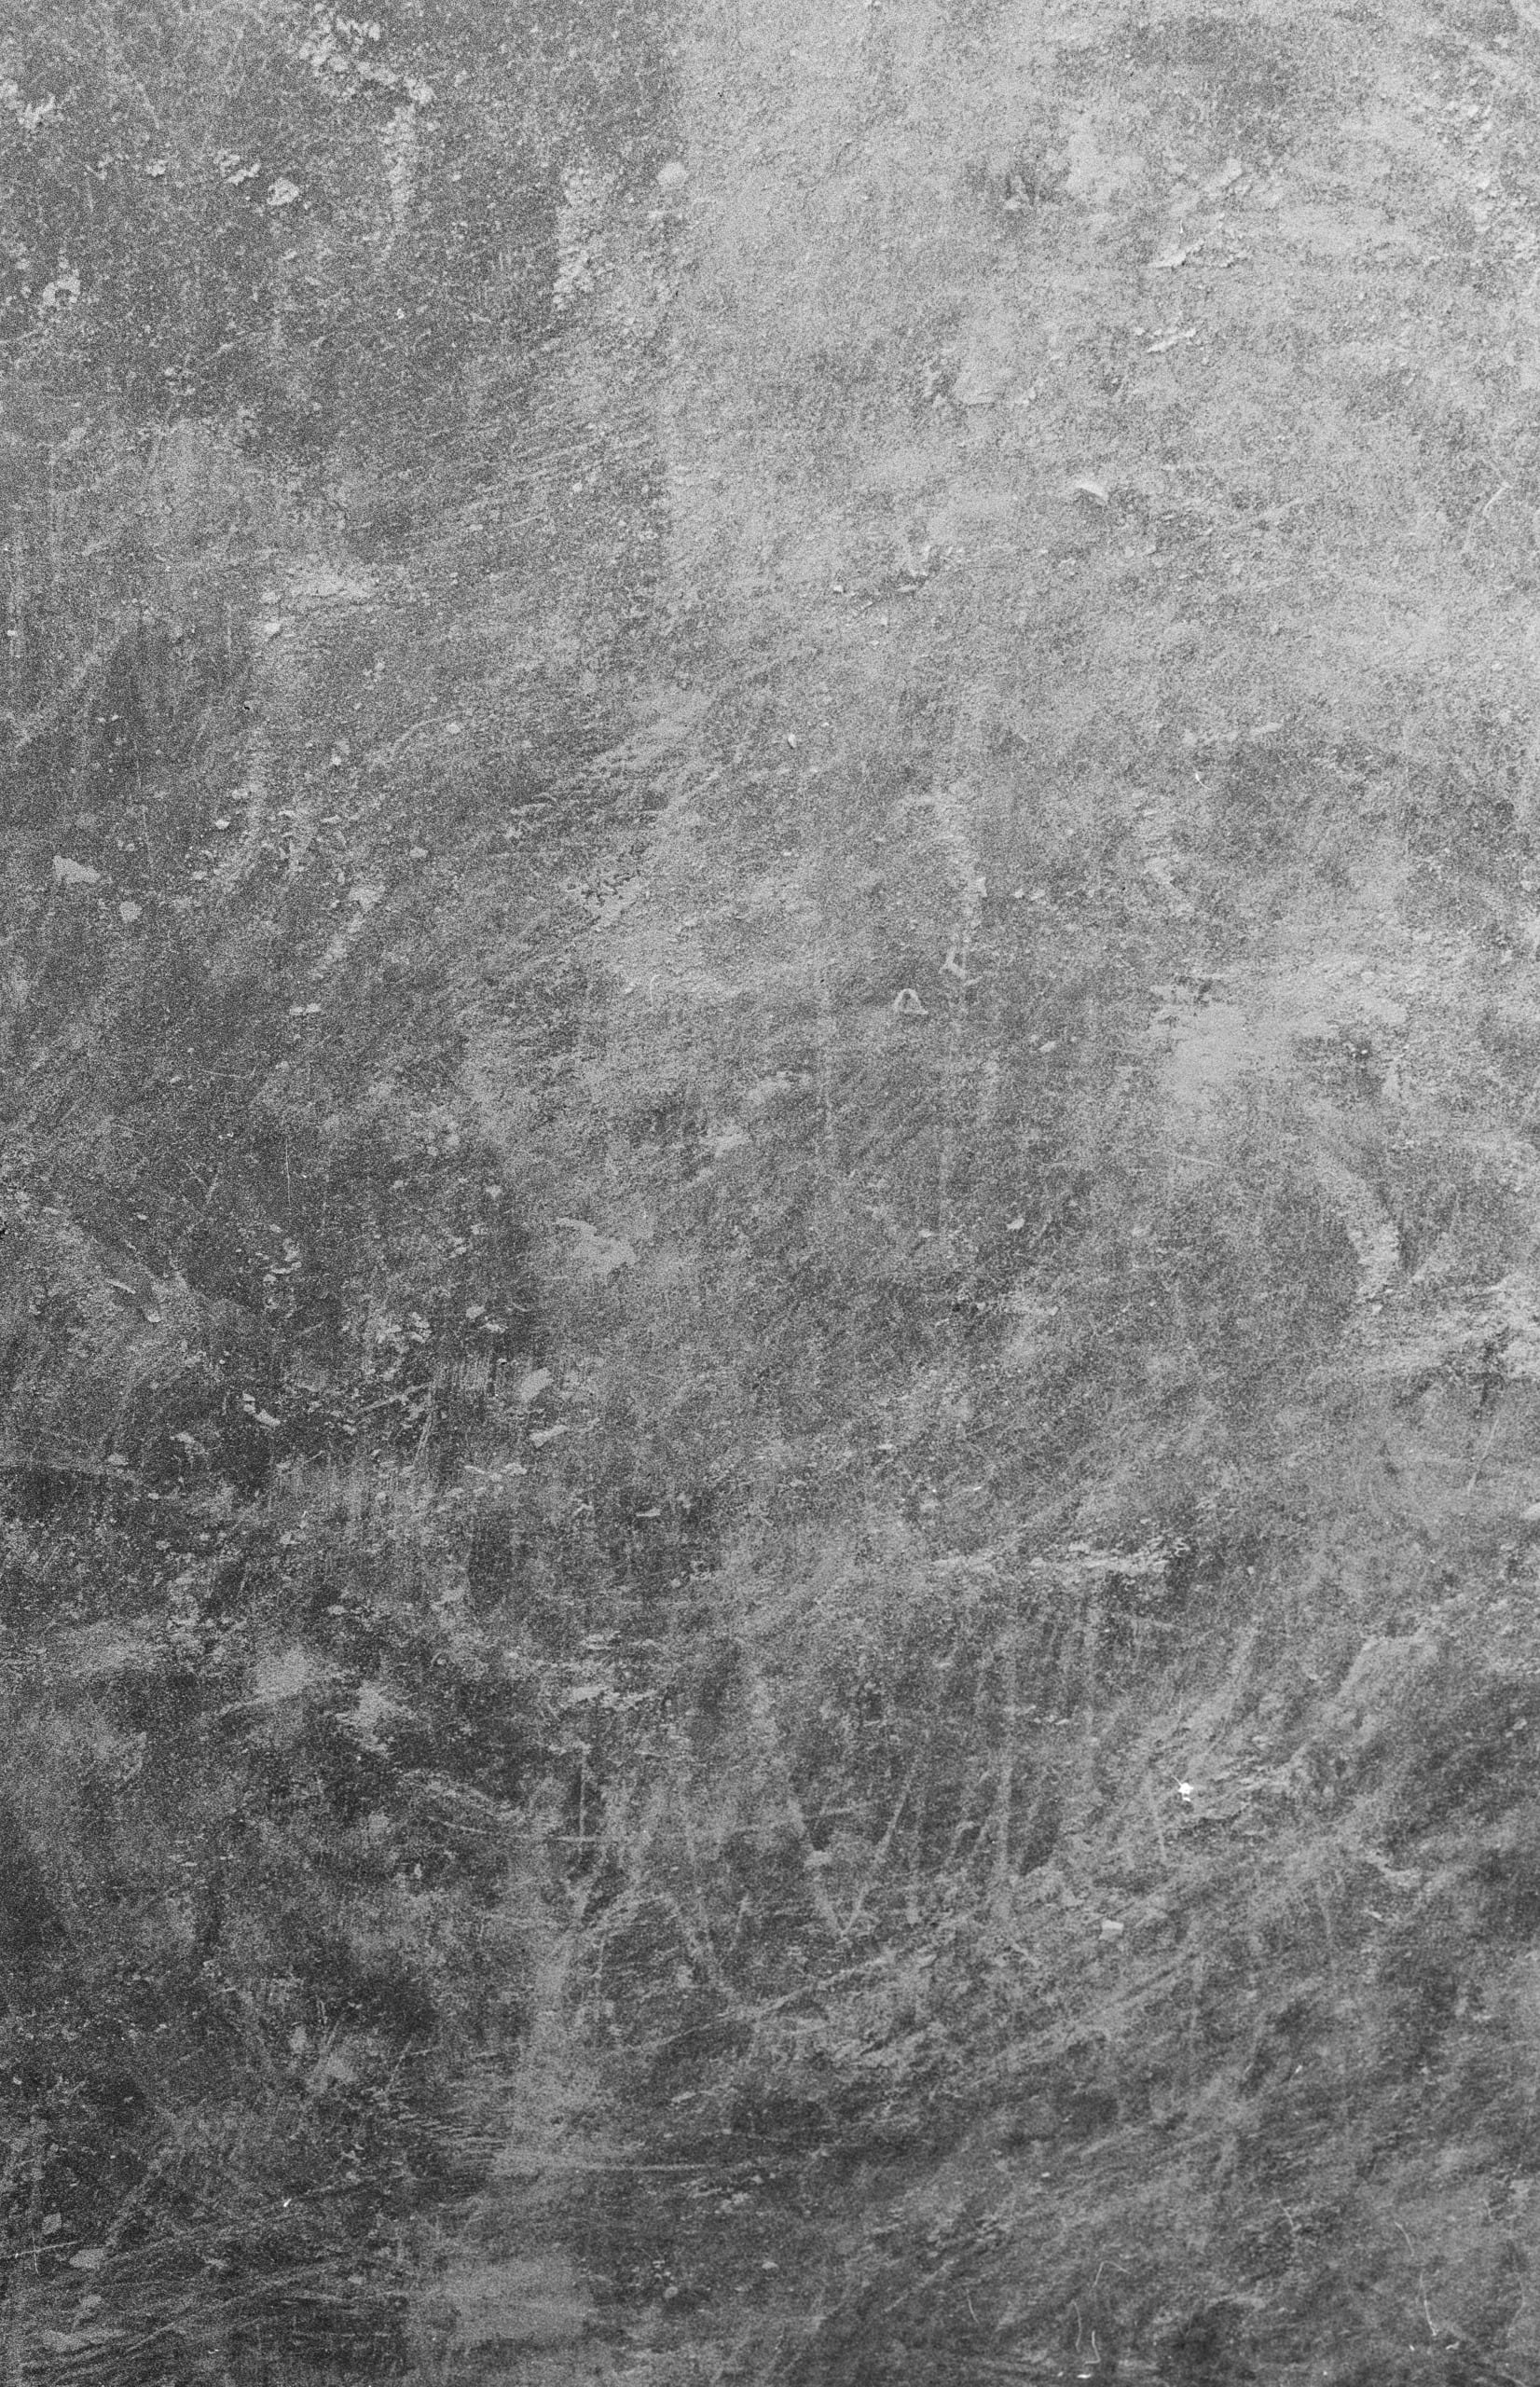 chalk marks on a stone floor